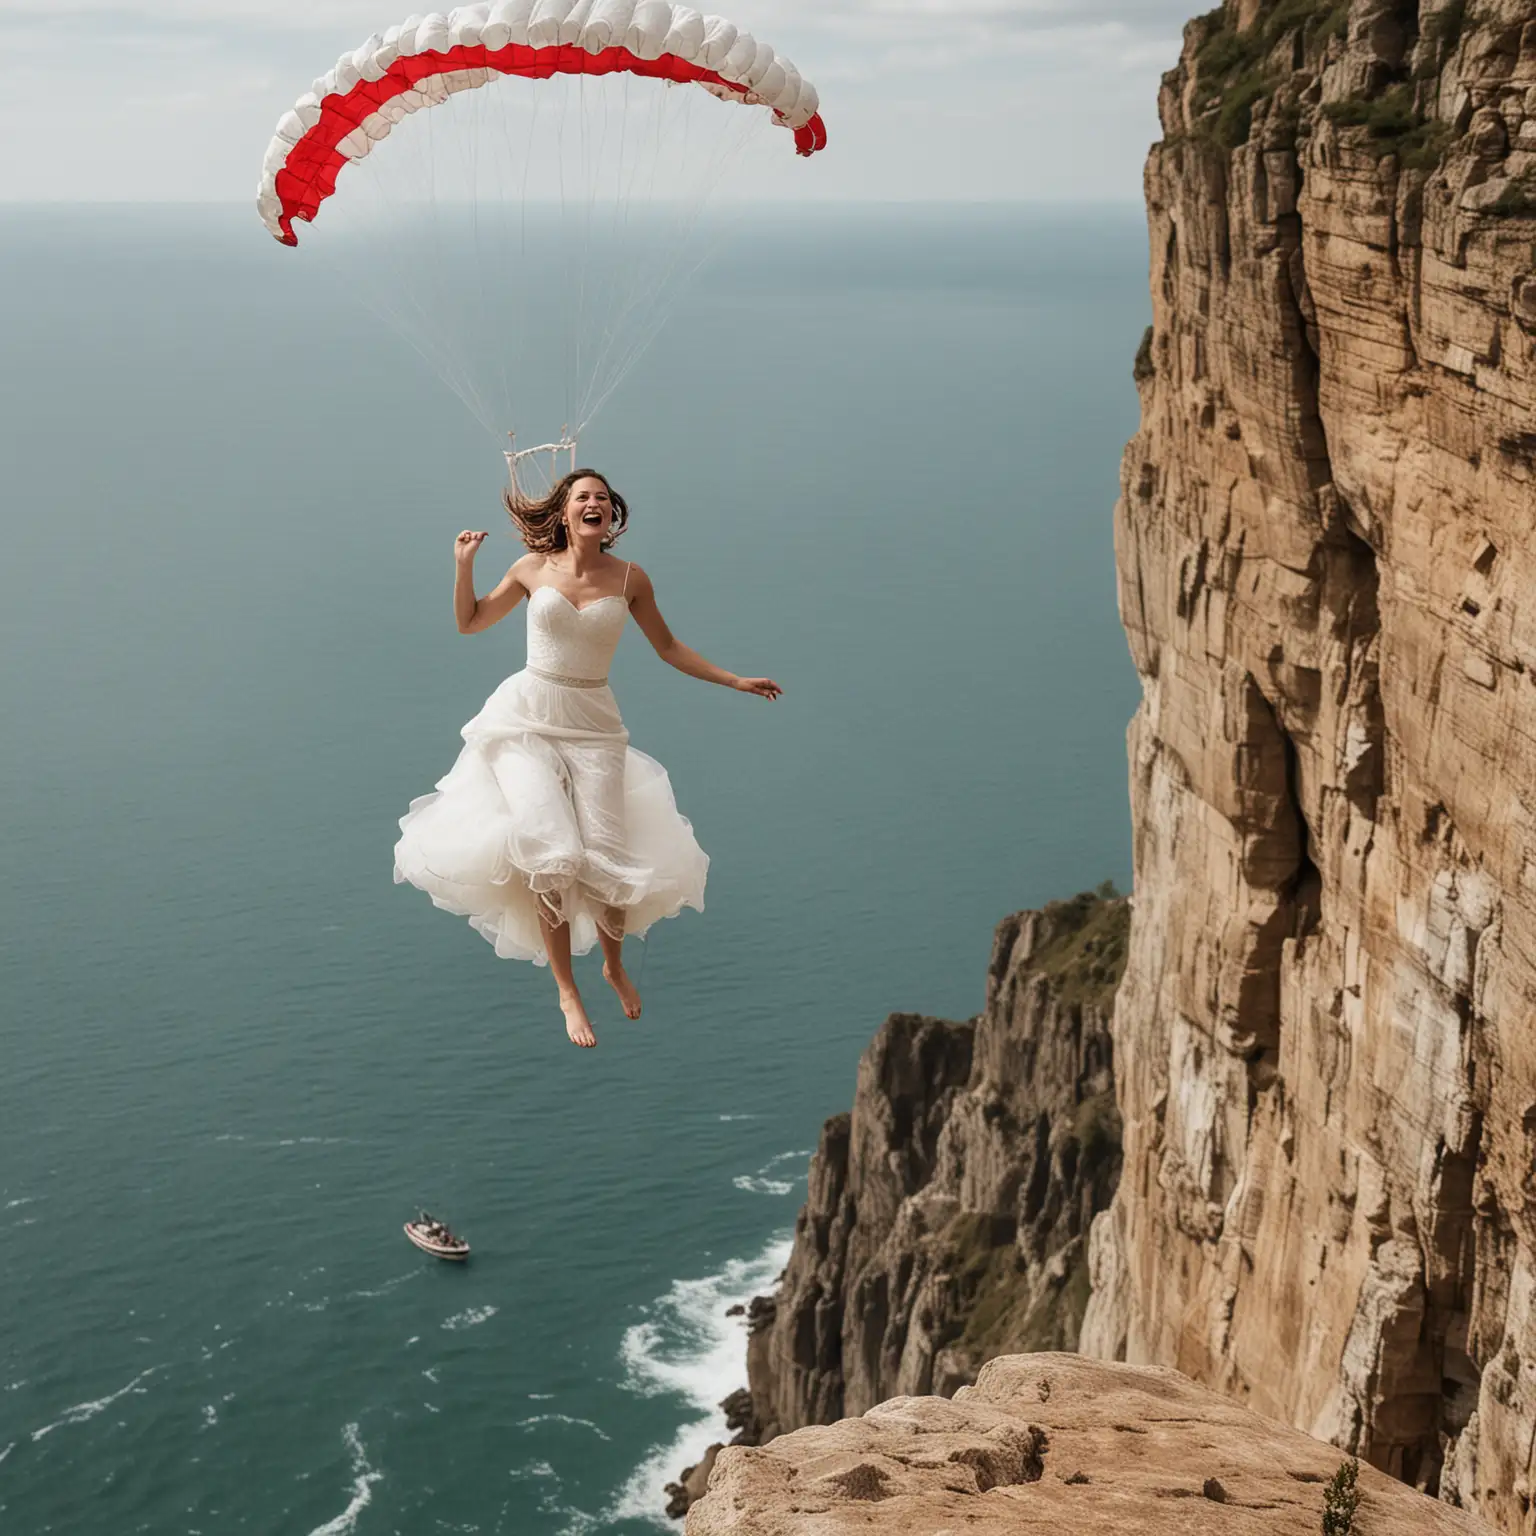 Adventurous Bride Parachuting Off Cliff